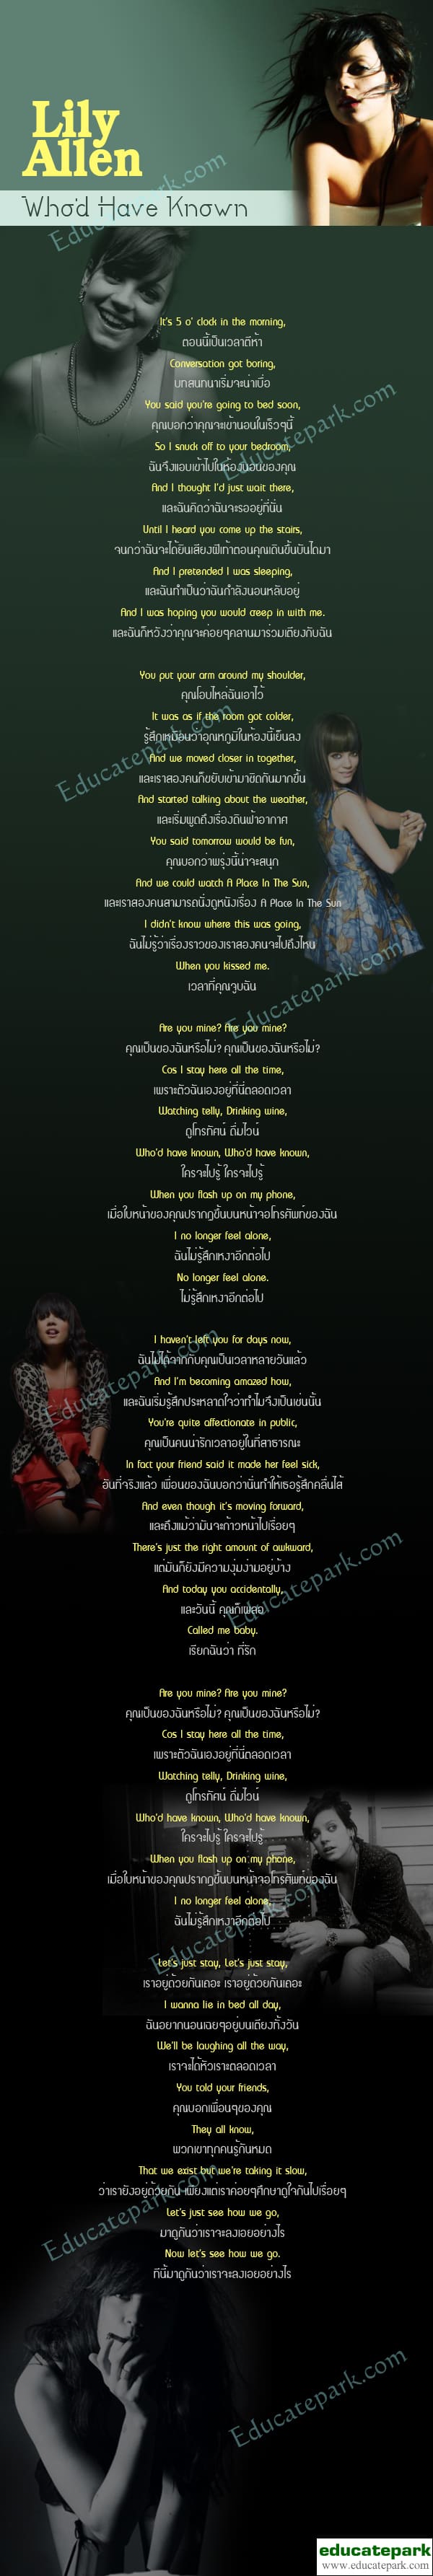 แปลเพลง Who'd Have Known - Lily Allen